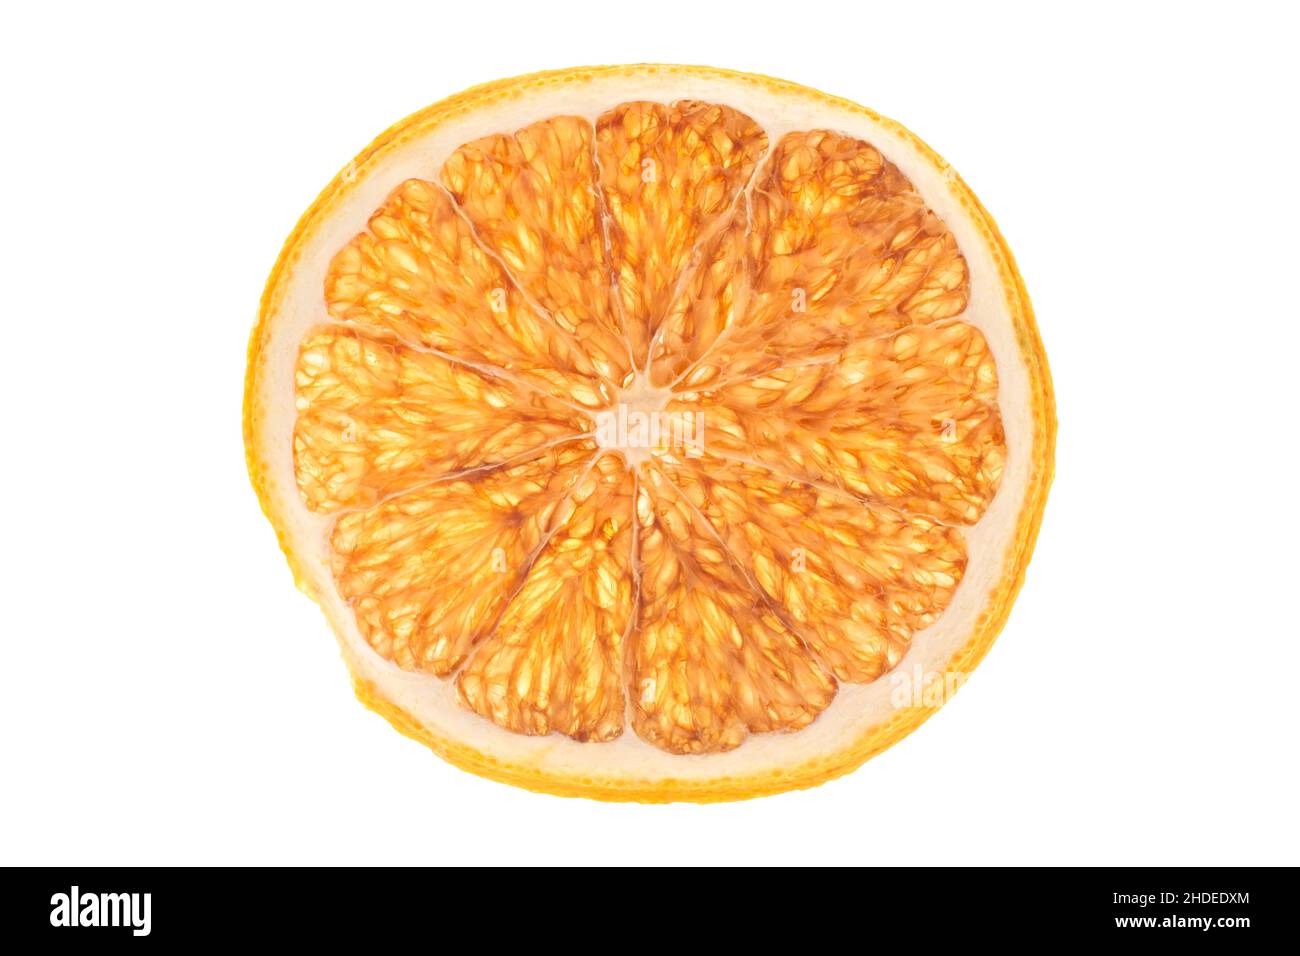 slice of dried orange on white background Stock Photo